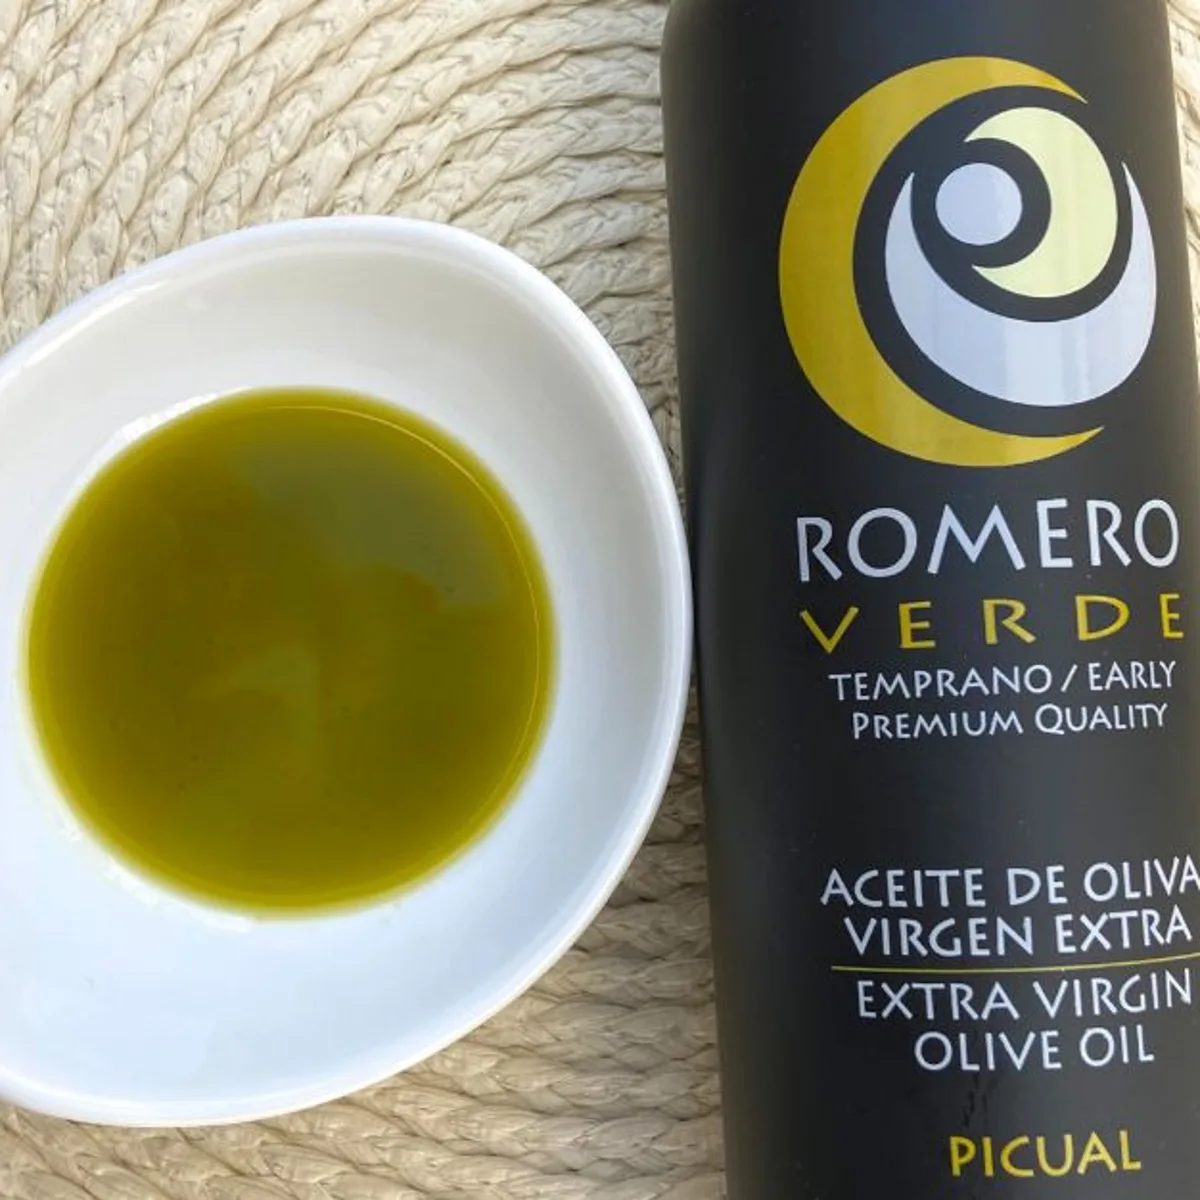 14 Beneficios del Aceite de Oliva Virgen Extra - Aceite Romero Verde